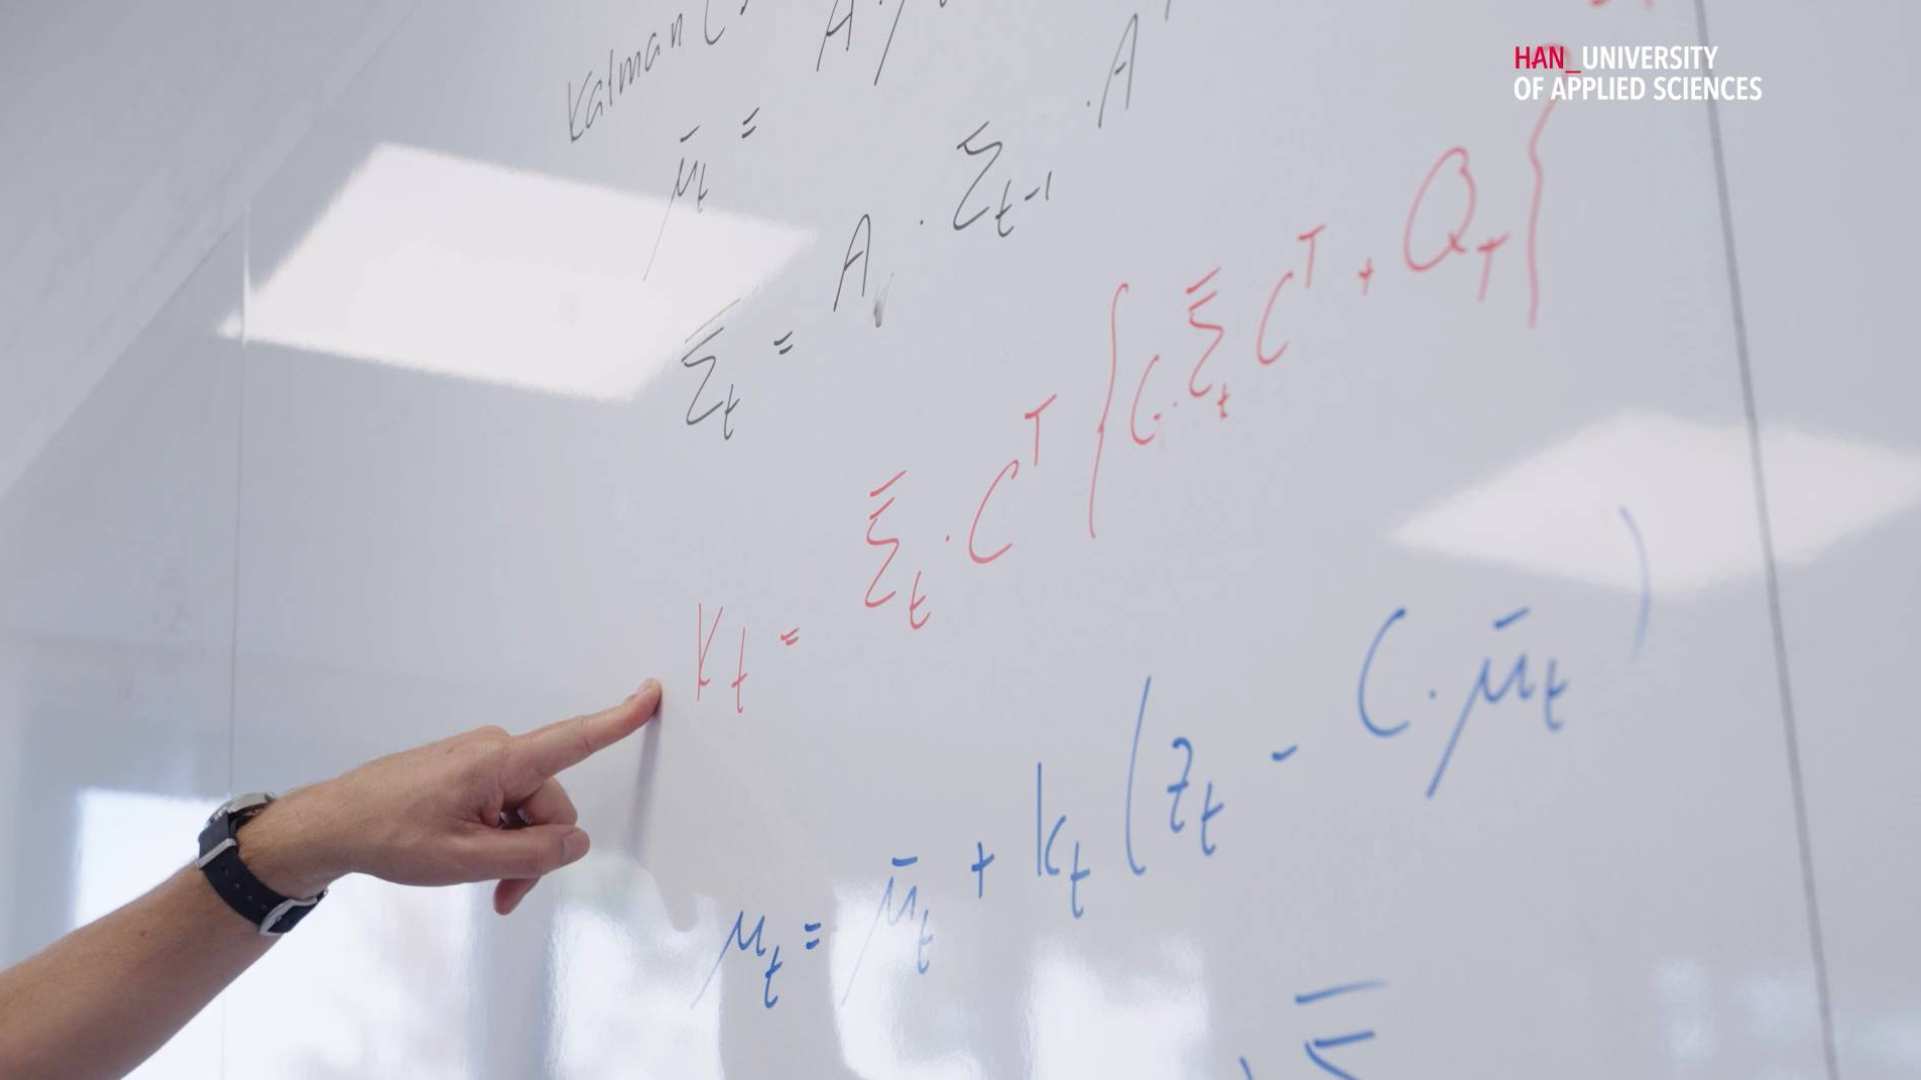 Videostill van whiteboard uit een hbo-ict les met wiskundige opgaven